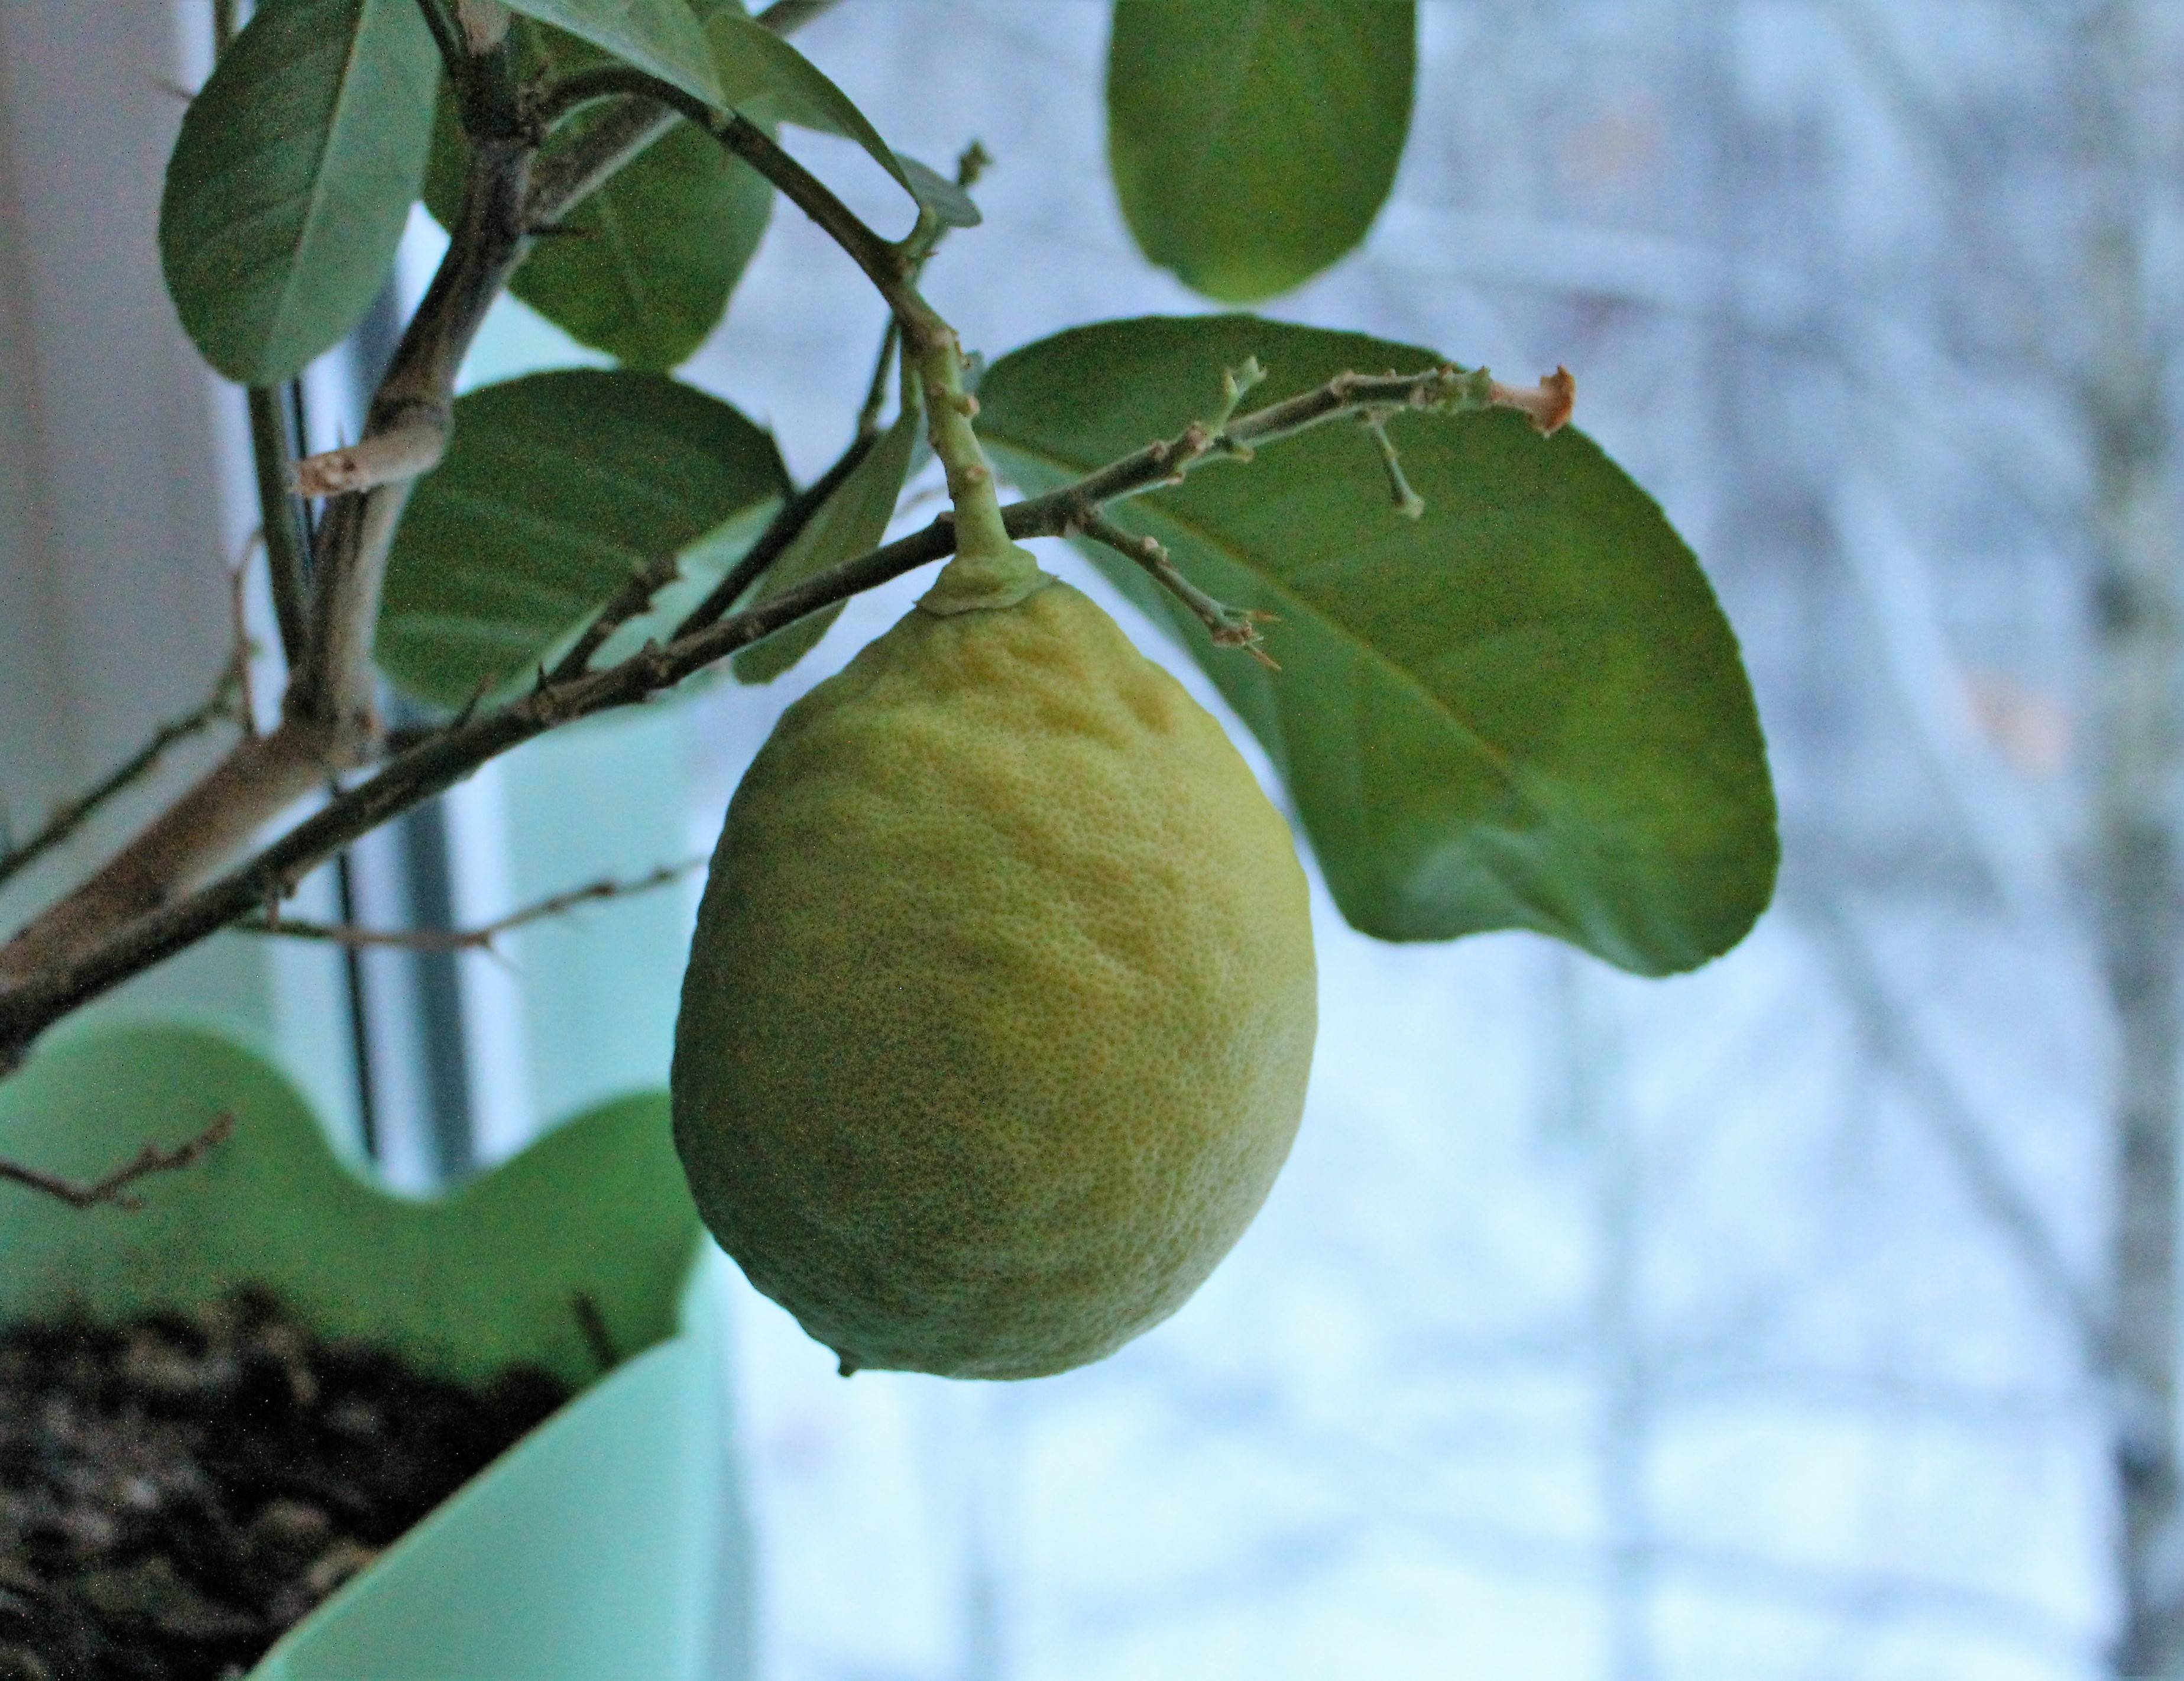 Лимон лунарио: описание сорта, выращивание в домашних условиях